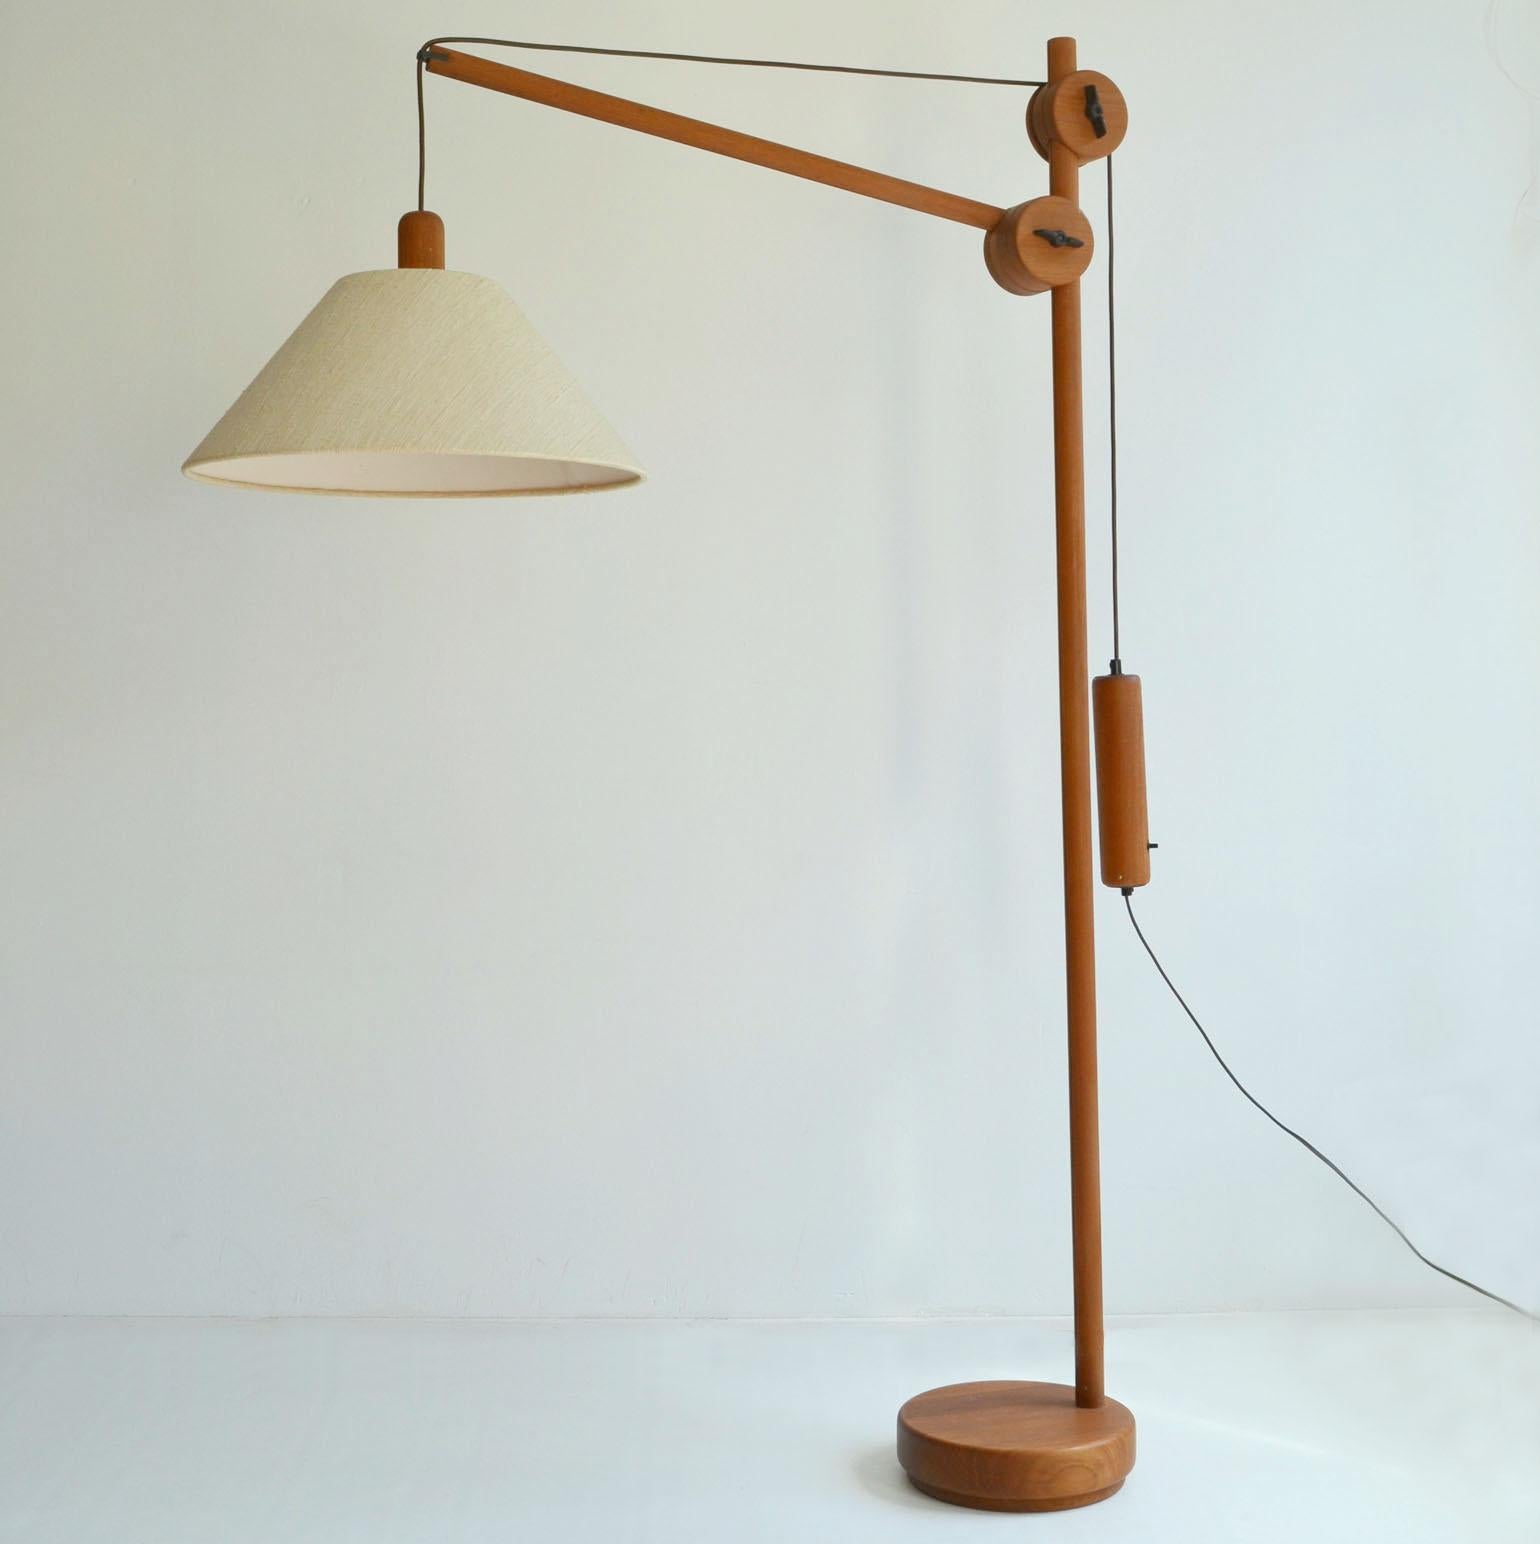 Skulpturale dänische Stehlampe aus der Mitte des Jahrhunderts, Anfang der 1970er Jahre. Das Gestell aus Teakholz hat einen verstellbaren Arm (mit einer Länge von 100 cm) und ein Ausgleichsgewicht für die Positionierung der Lichtquelle. Die Lampe und